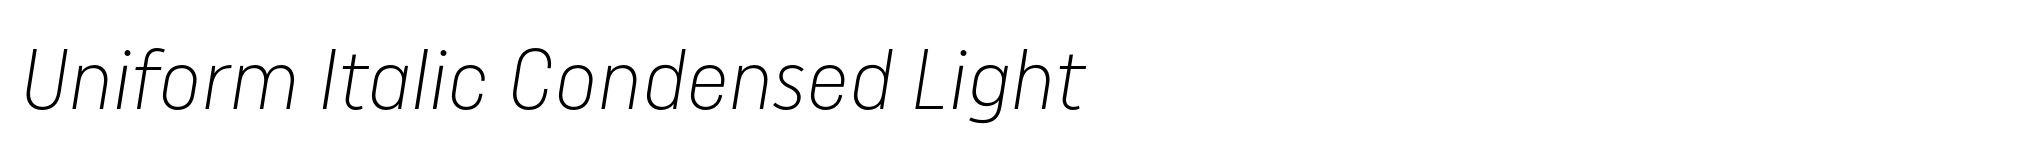 Uniform Italic Condensed Light image